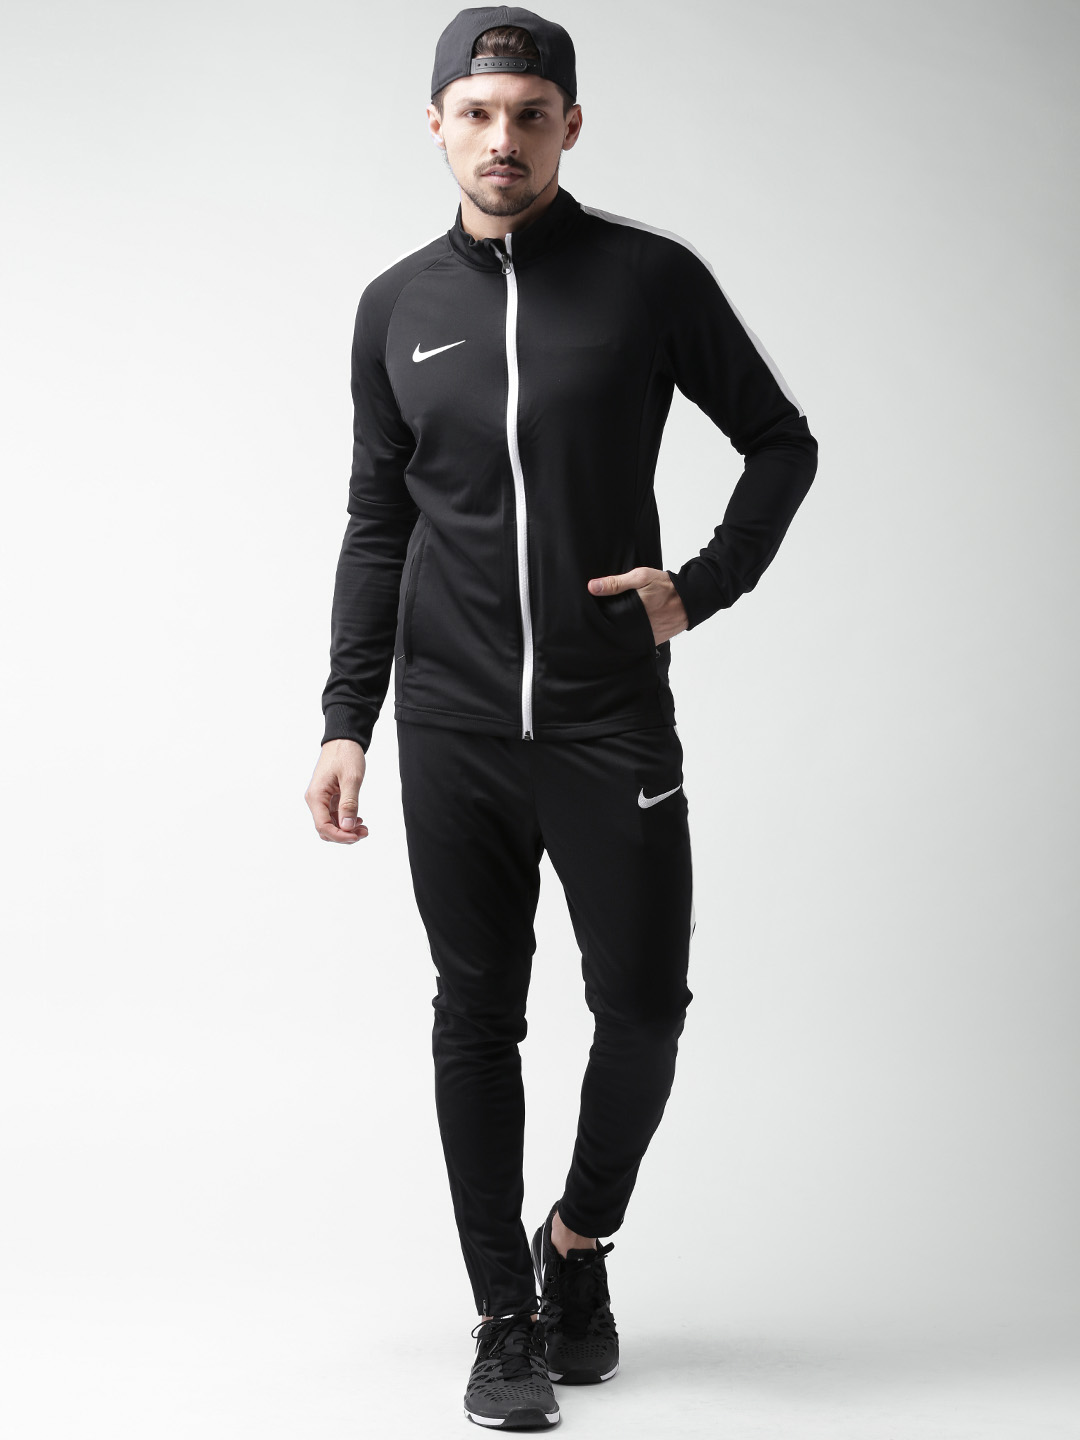 sportswear for men 2019